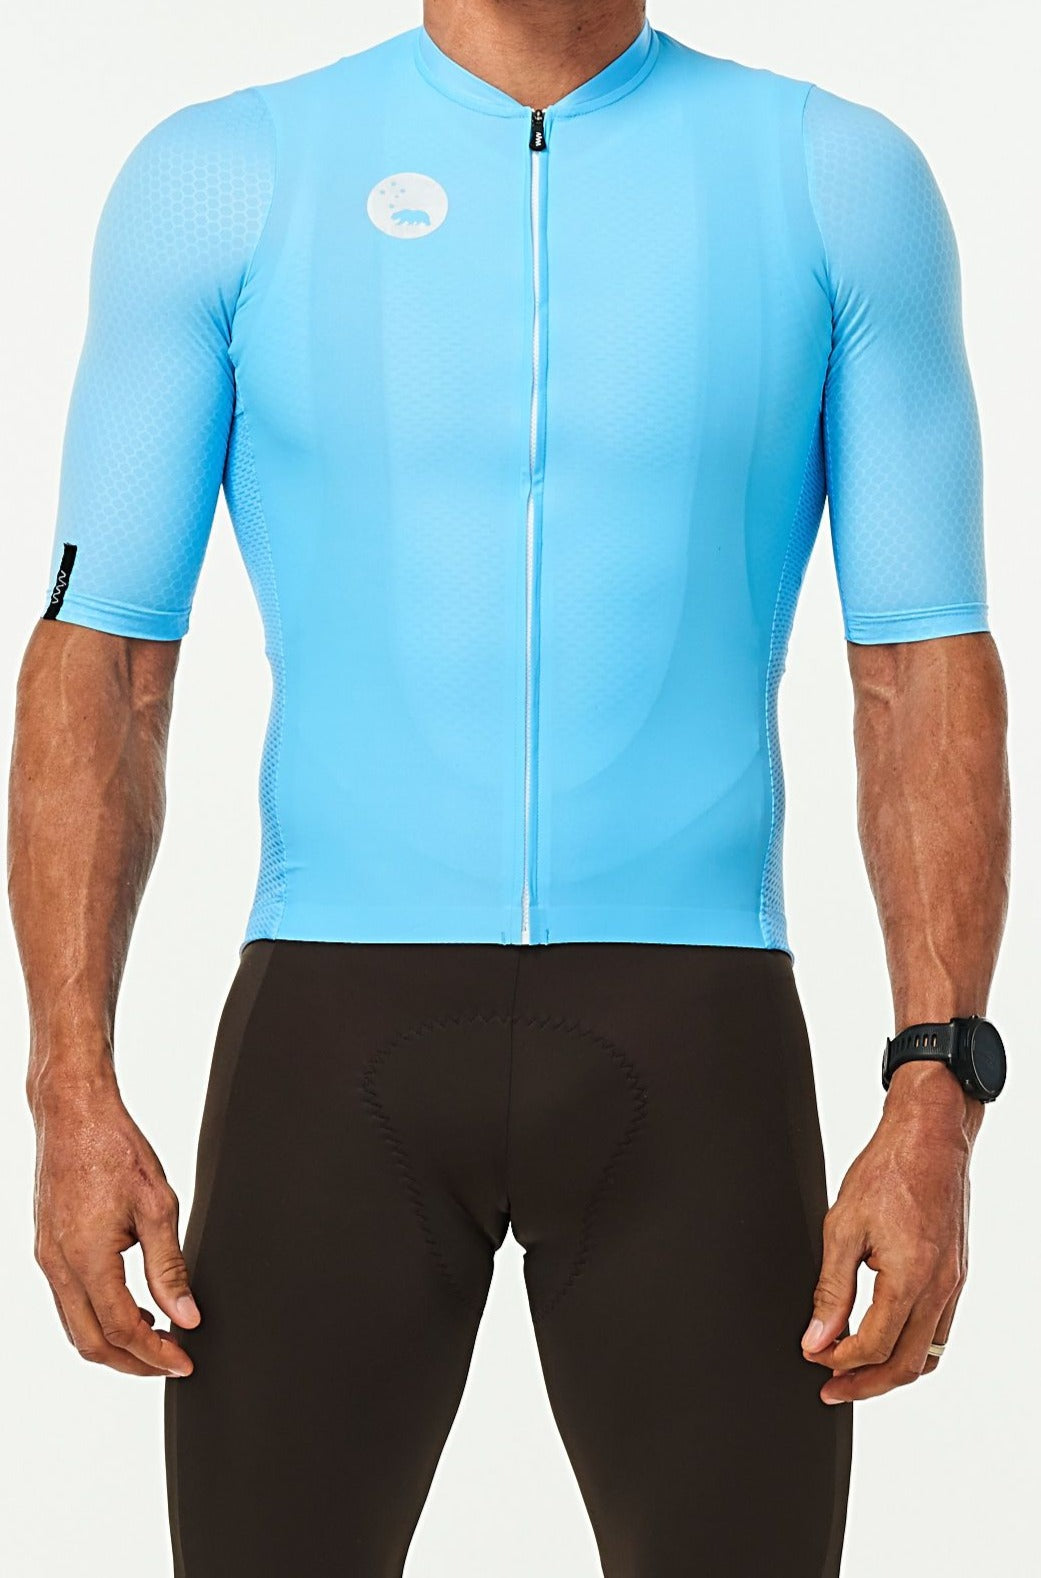 WYN republic Men's Sky Blue Luceo Hex Racer Jersey. Blue cycling jersey.